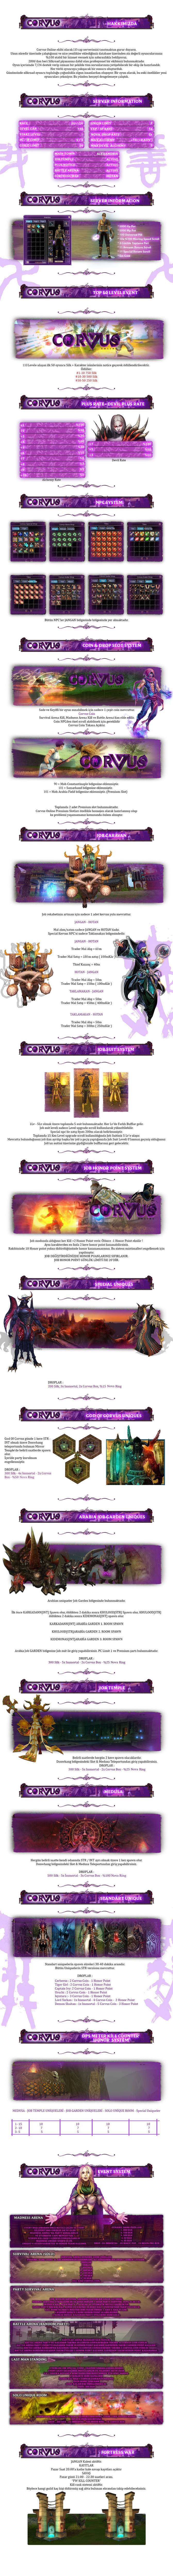 corvus onlineee-min.jpg